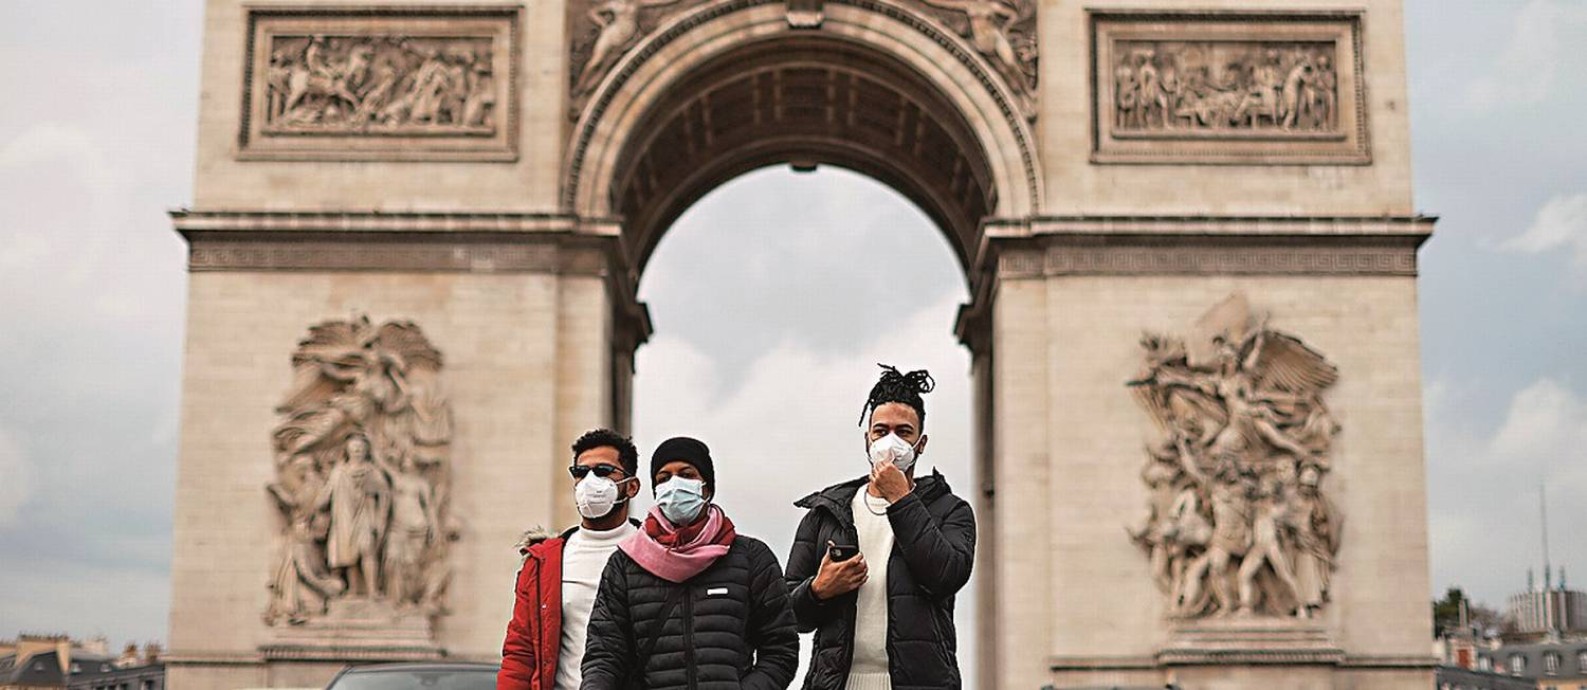 Em Paris, o uso de máscaras voltou a ser obrigatório em locais públicos, como o Arco do Triunfo Foto: GONZALO FUENTES / REUTERS